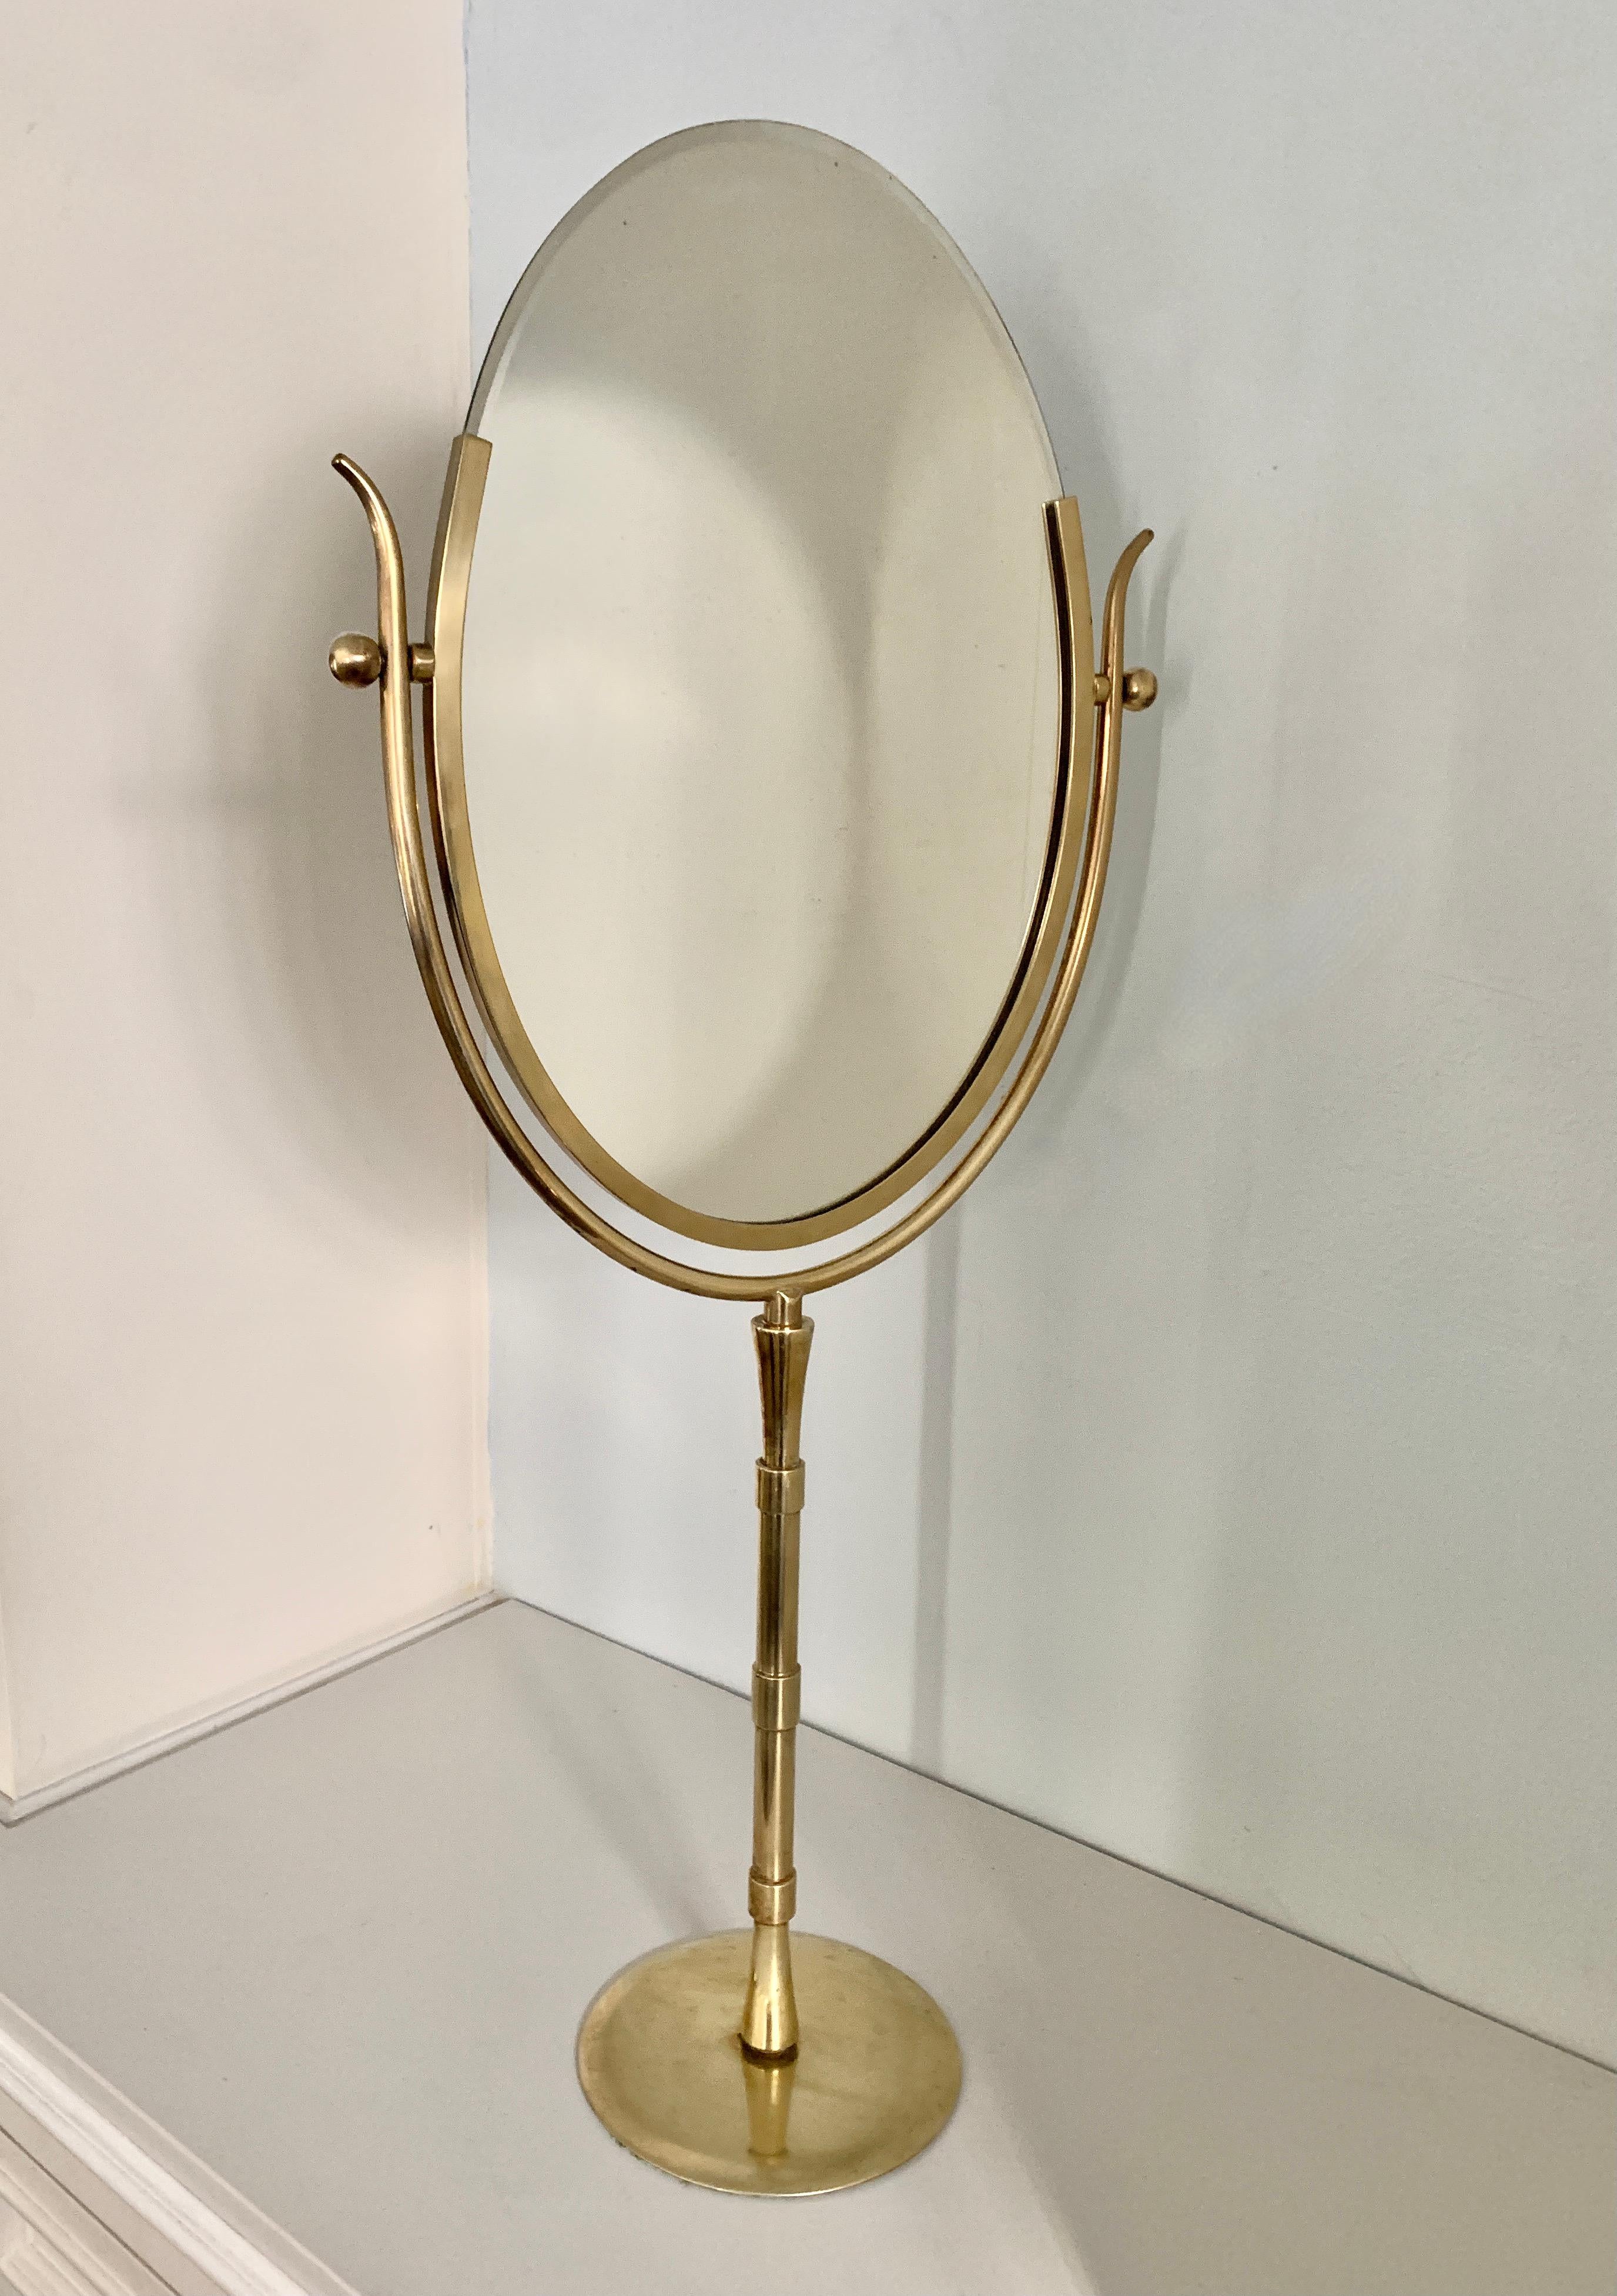 Dies ist ein seltener und spektakulärer Vanity-Spiegel von Charles Hollis Jones. Wir haben eine Beziehung zu Charles und während eines kürzlichen Telefongesprächs bestätigte er, dass dieser Spiegel ein seltenes Exemplar seines Wishbone-Spiegels ist,